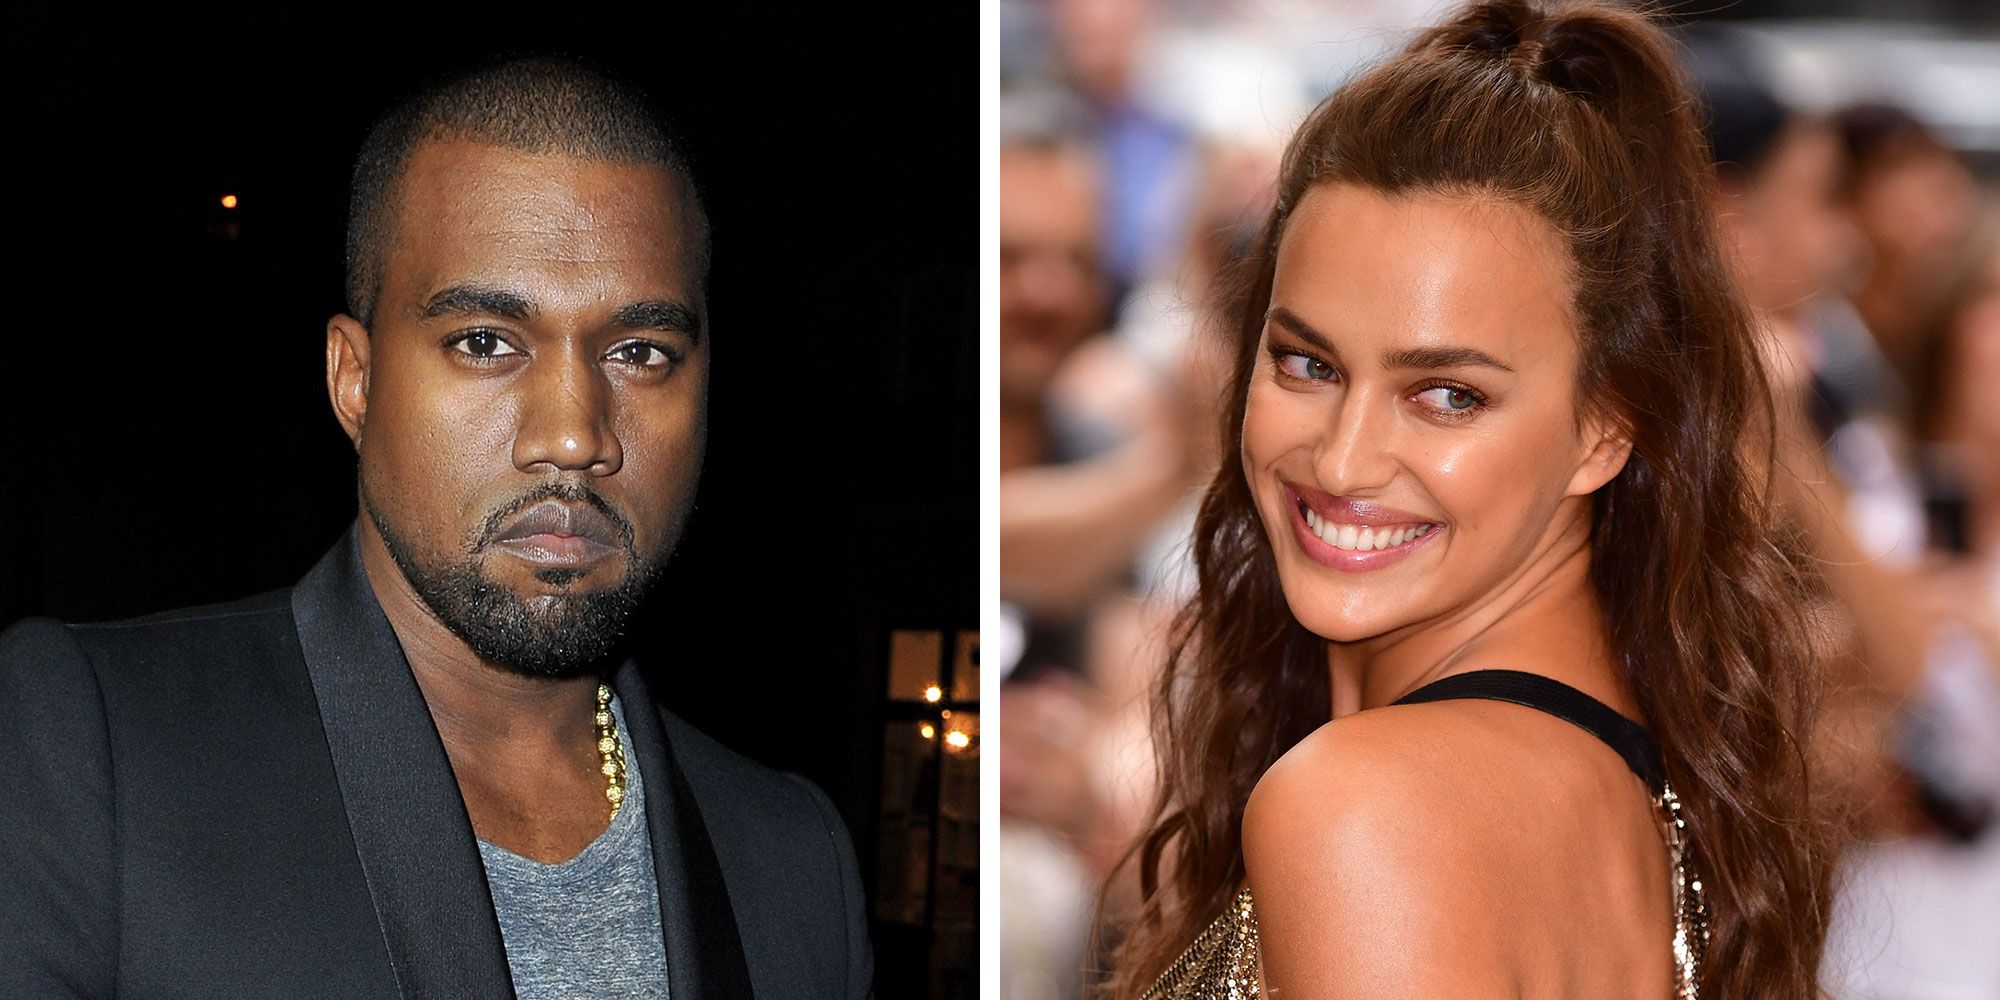 Why Irina Shayk and Kanye West Broke Up